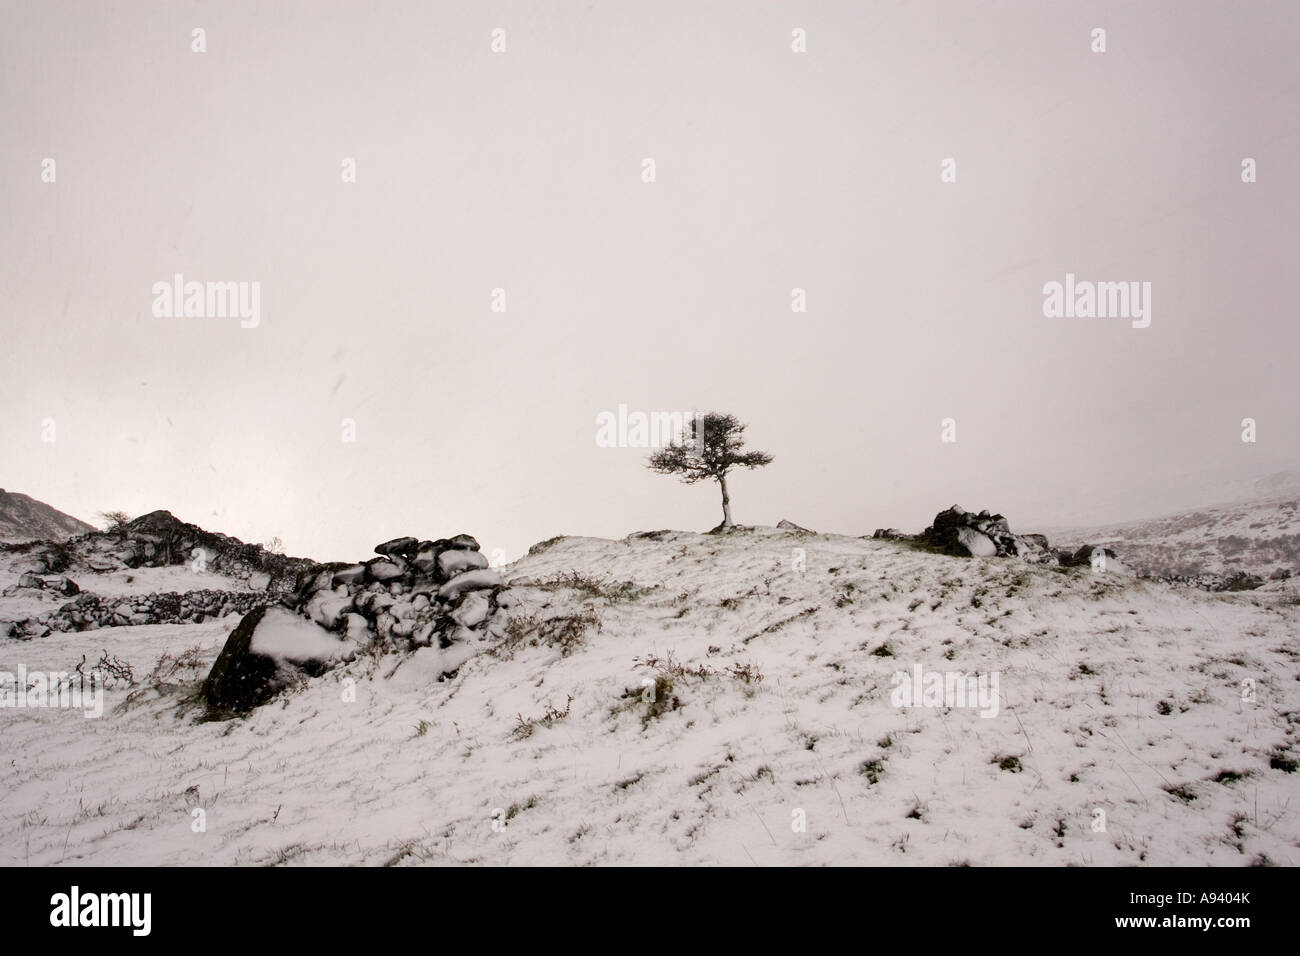 Ein einsamer Baum in einem Schneesturm Schnee in eine verschneite Landschaft in der Cooley Bergen County Louth Irland Stockfoto